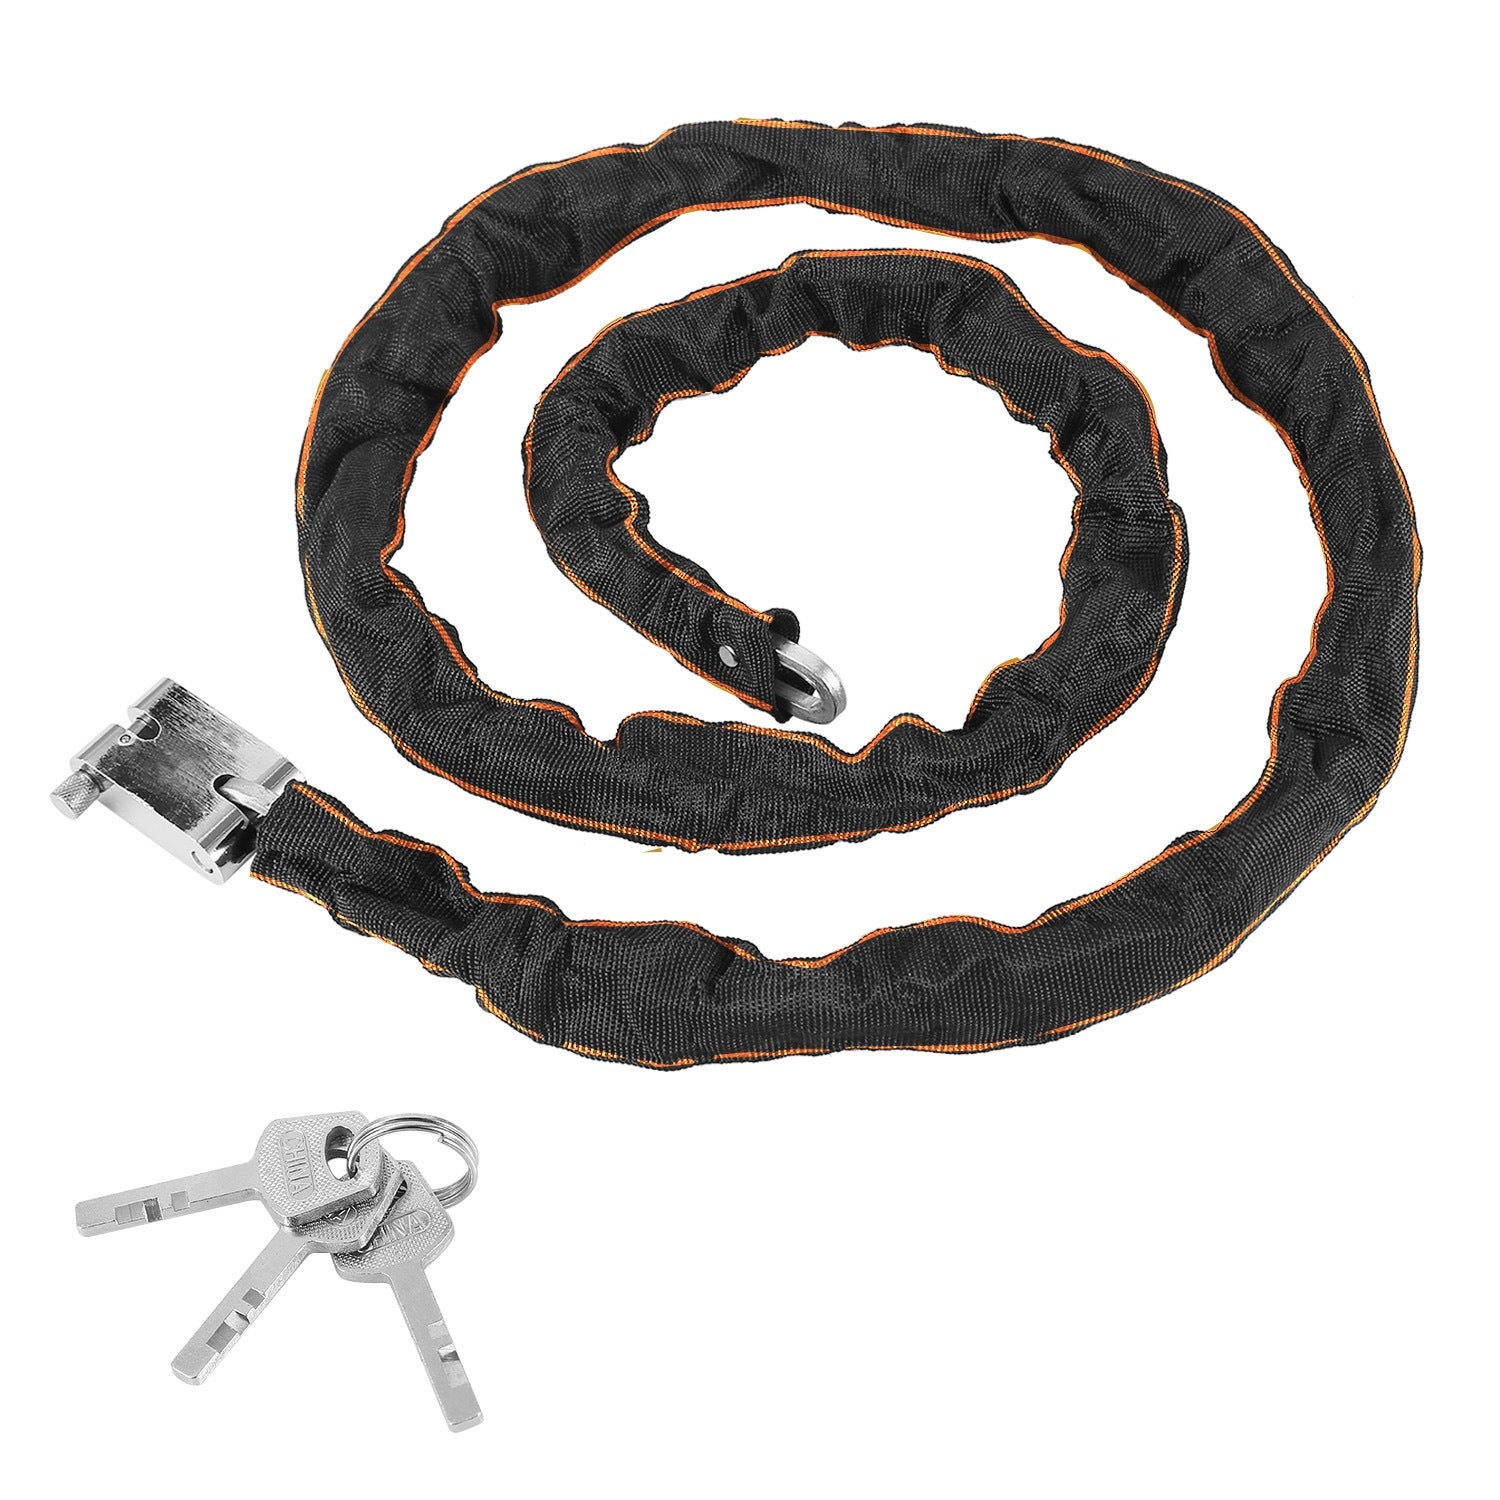 title:1.8M Bike Chain Lock w/ 3 Keys Heavy Duty Security Lock Bicycle Motorcycle Motor Bike Chain Lock;color:Black